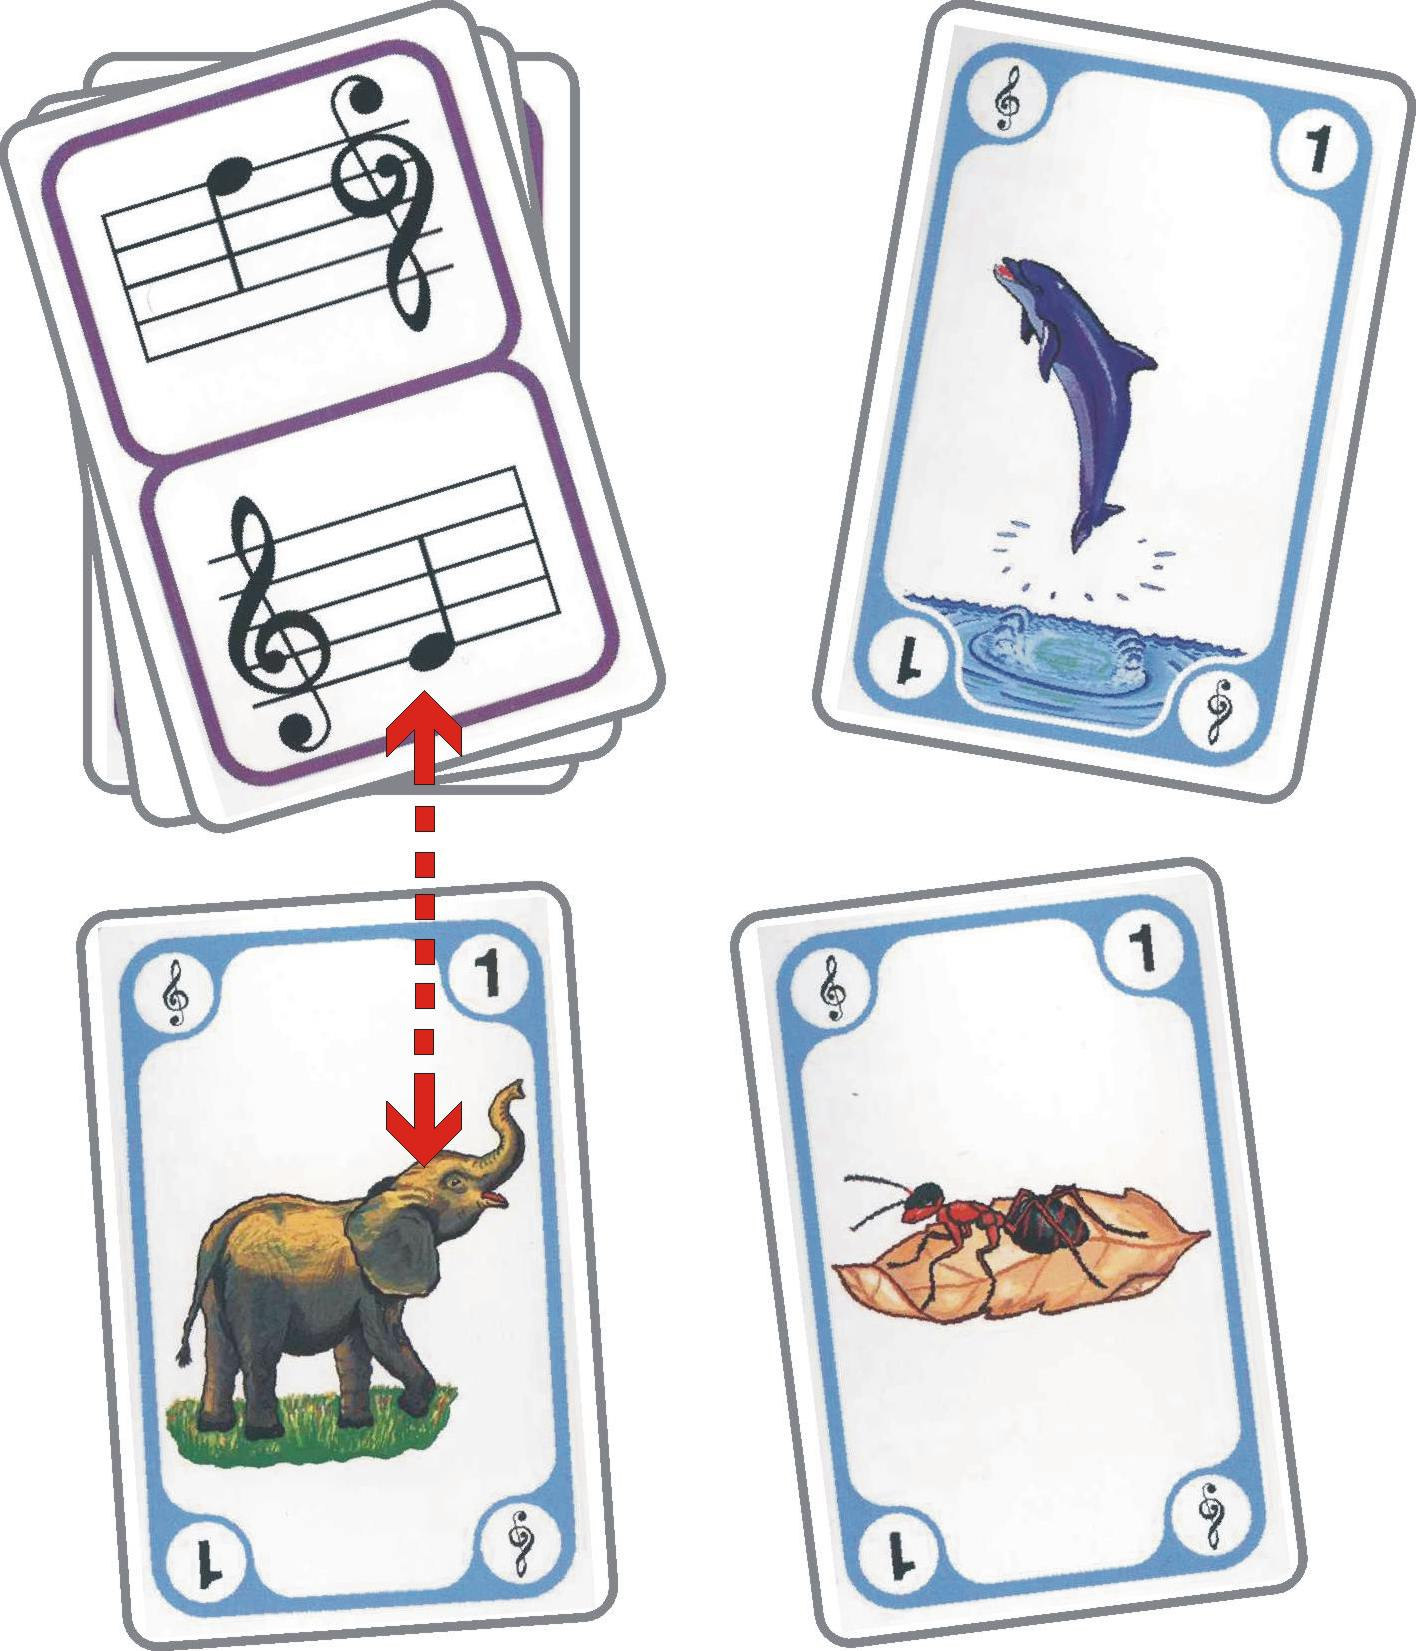 5 Der Spieler, der an der Reihe ist, hat genau einen Versuch, zu der Note auf dem Stapel die passende Bildkarte zu finden.